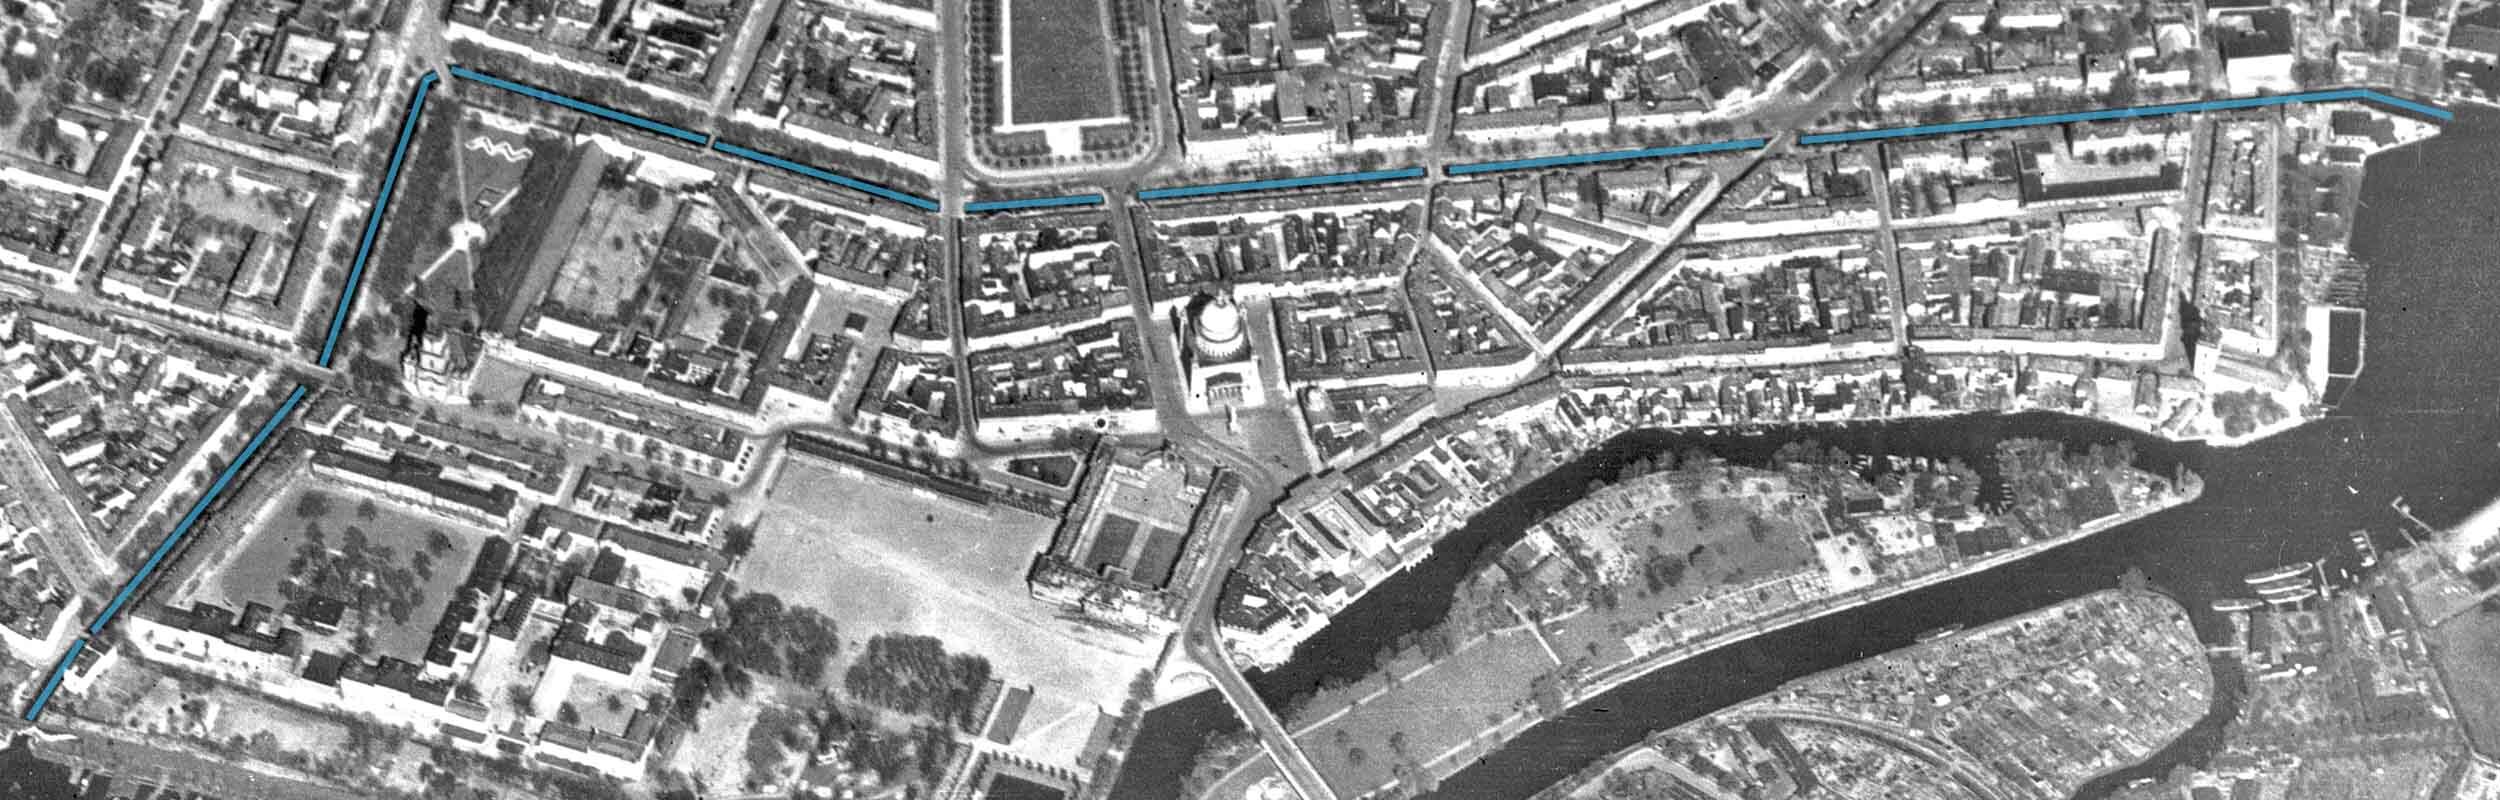 Foto: Luftbild von 1944 mit farblicher Kennzeichnung des Stadtkanals.